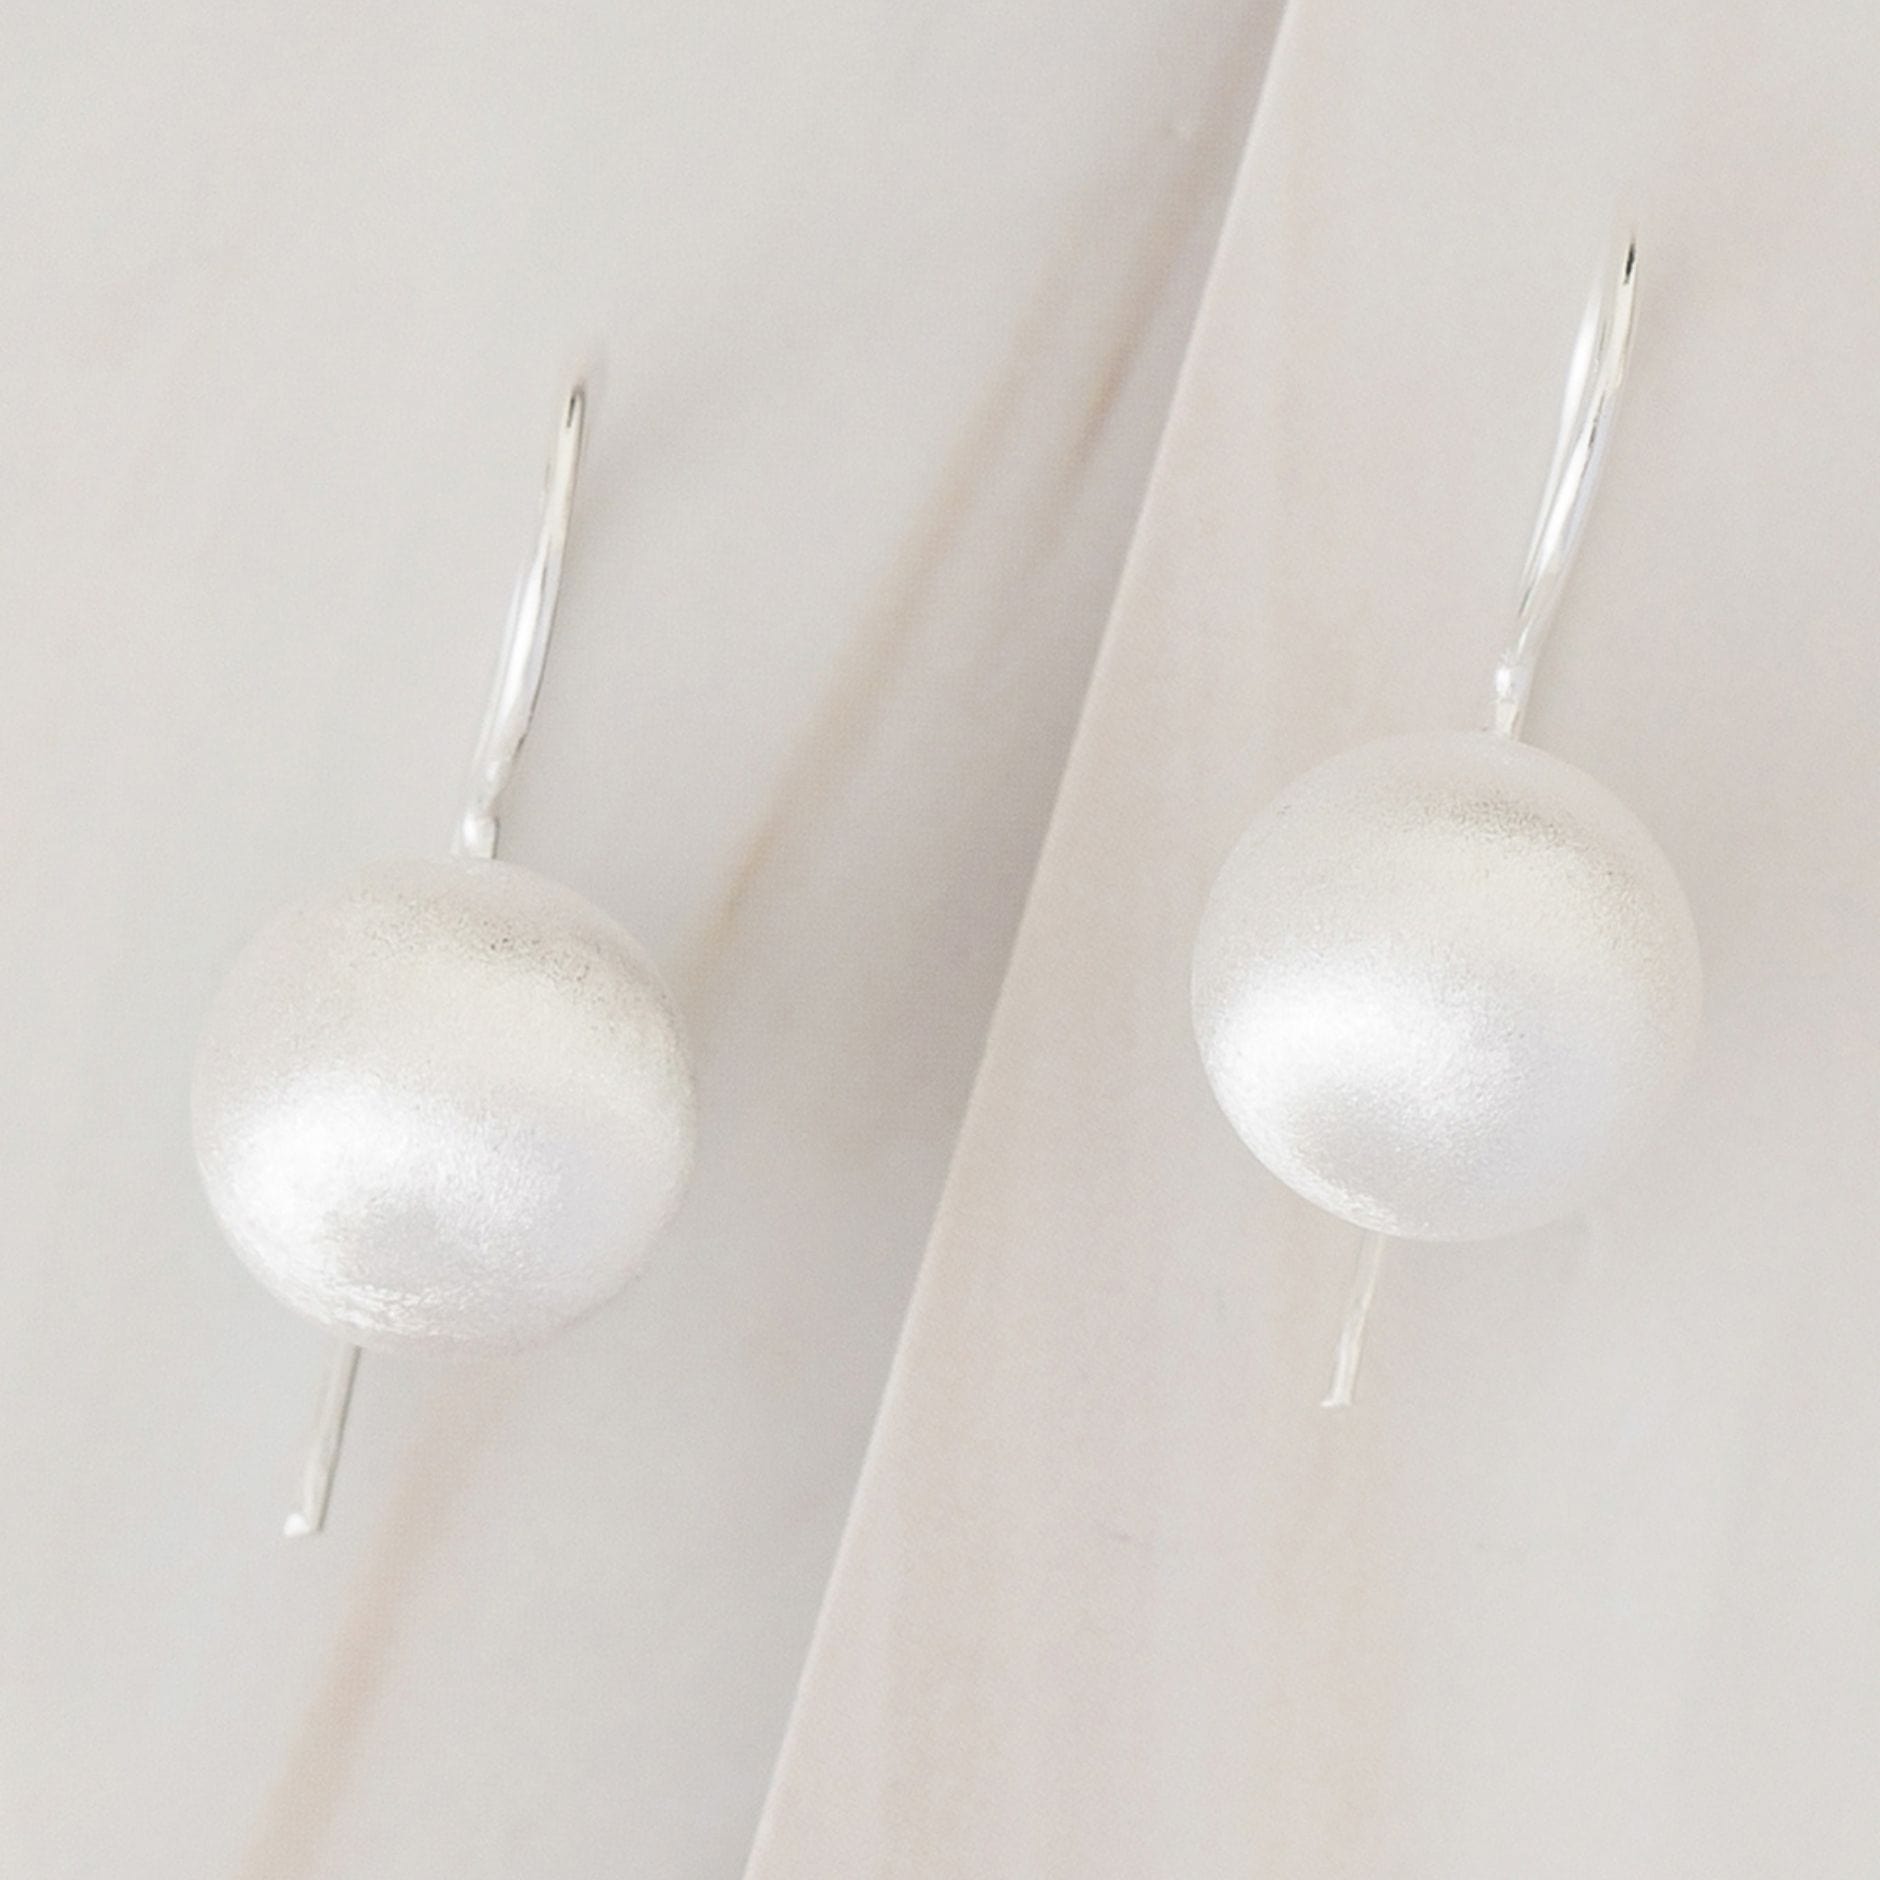 Emblem Jewelry Earrings Silver Tone / 14 mm Terrene Matte Ball Drop Earrings